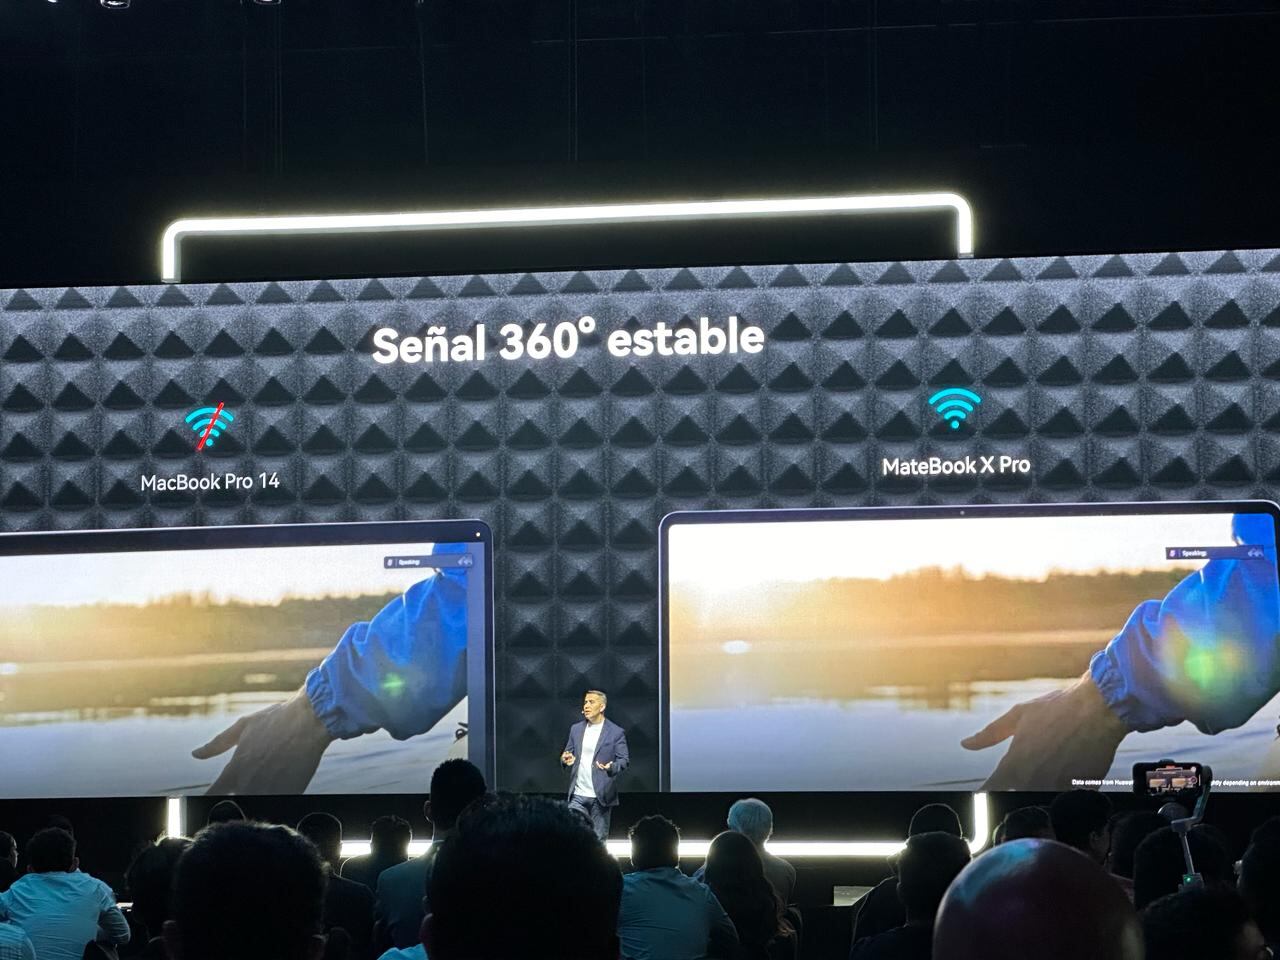 Lanzamiento de la nueva MateBook X Pro y MatePad 11.5"S, productos de Huawei.